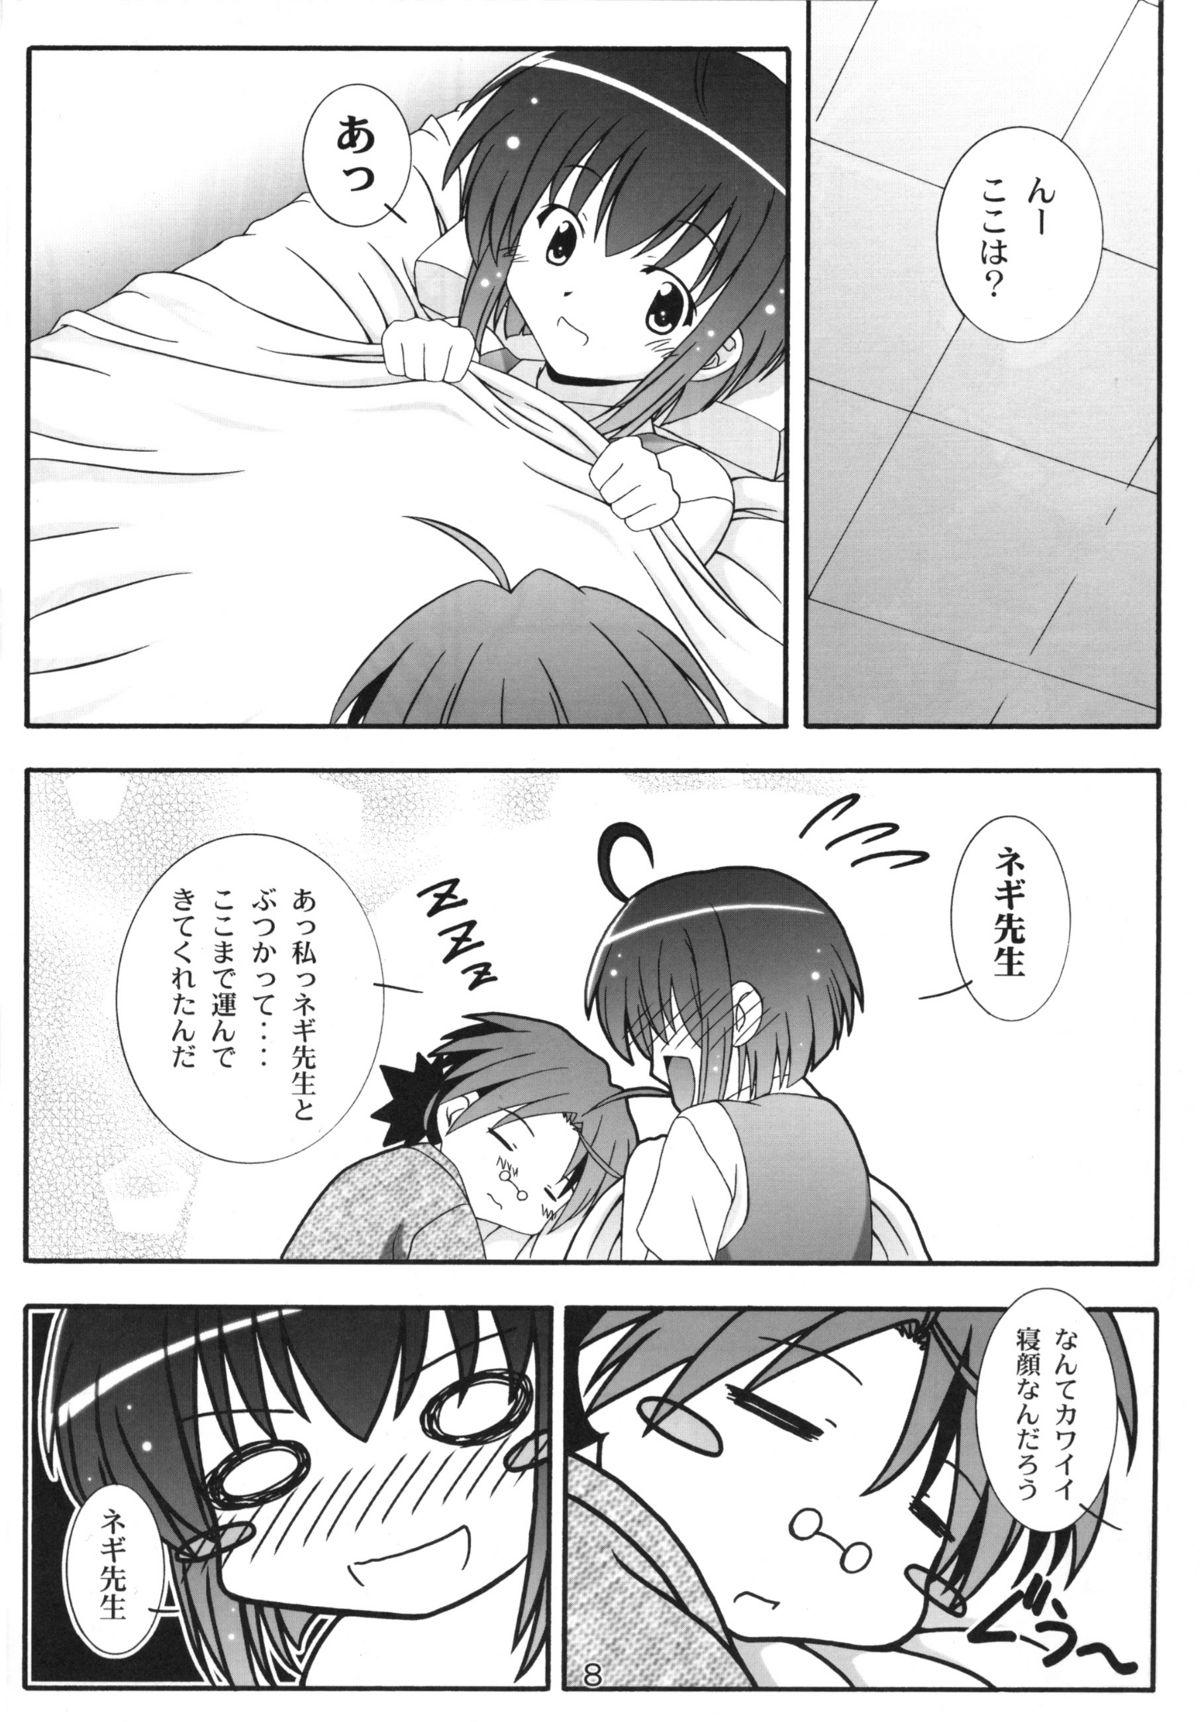 Parties Nodoca no Dream | Nodoca's Dream - Mahou sensei negima Gay Boysporn - Page 7